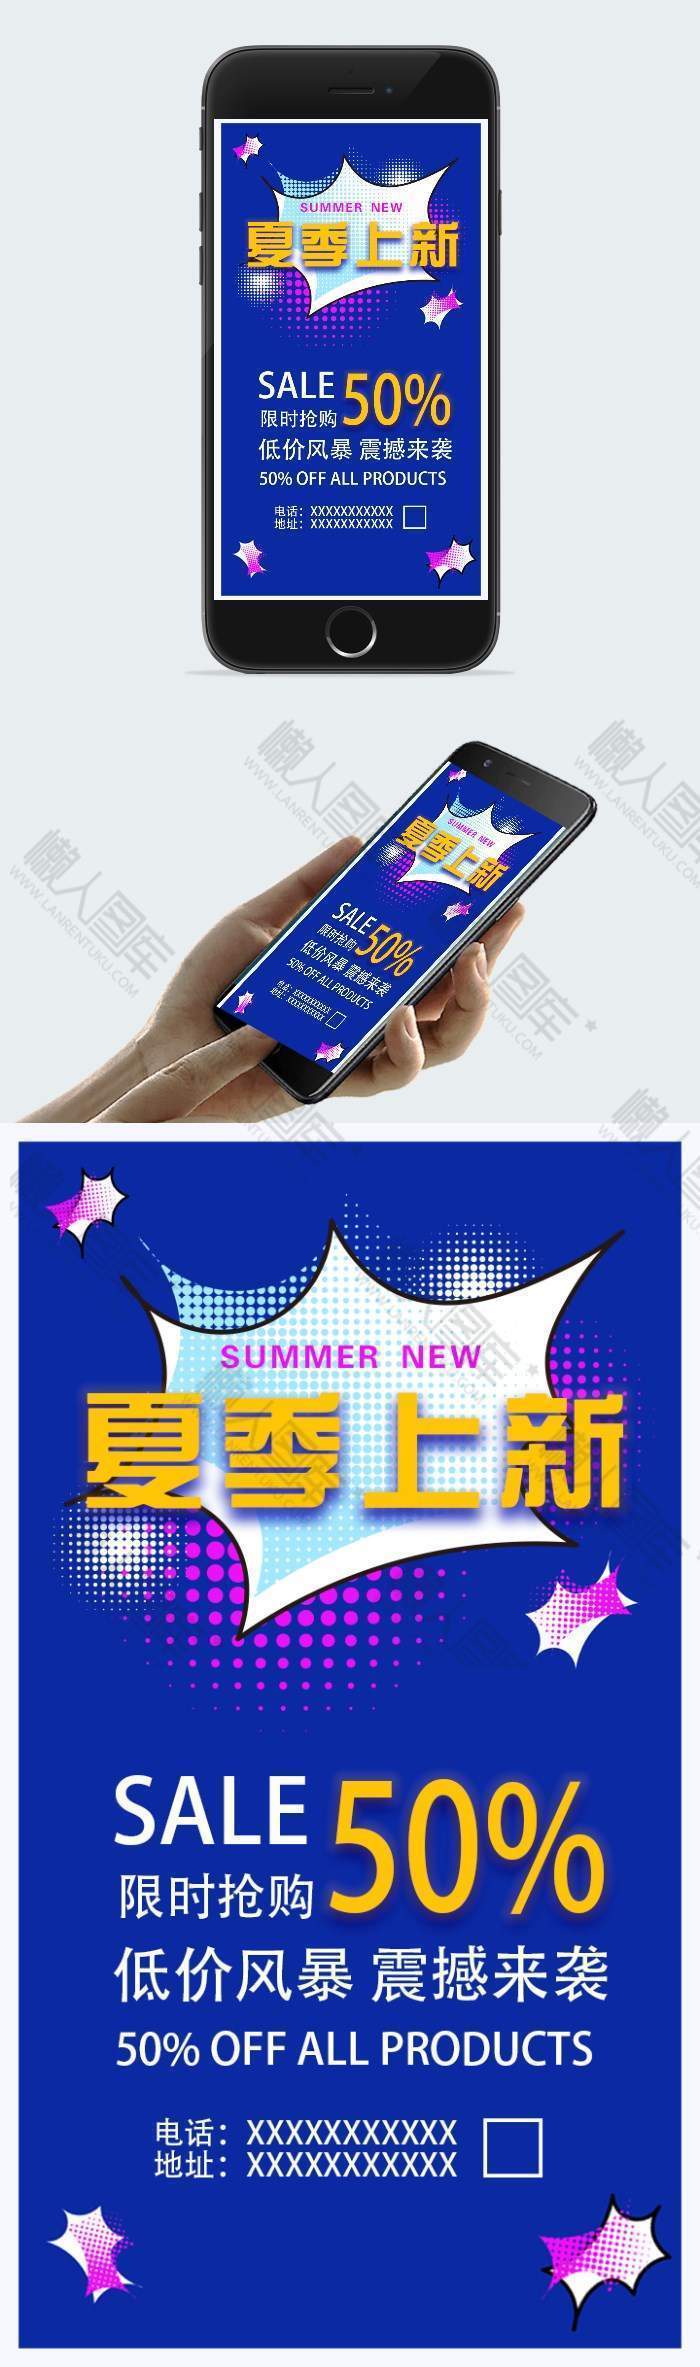 夏季上新促销活动手机海报